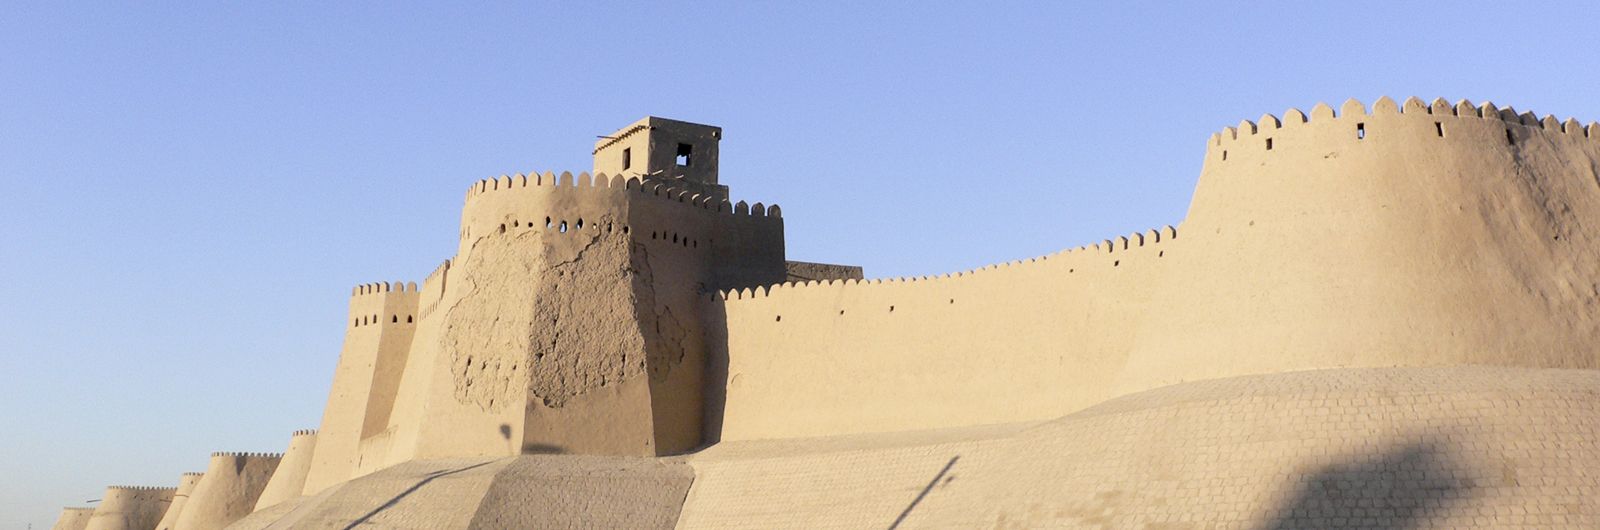 de paseo alrededor de las murallas de Khiva